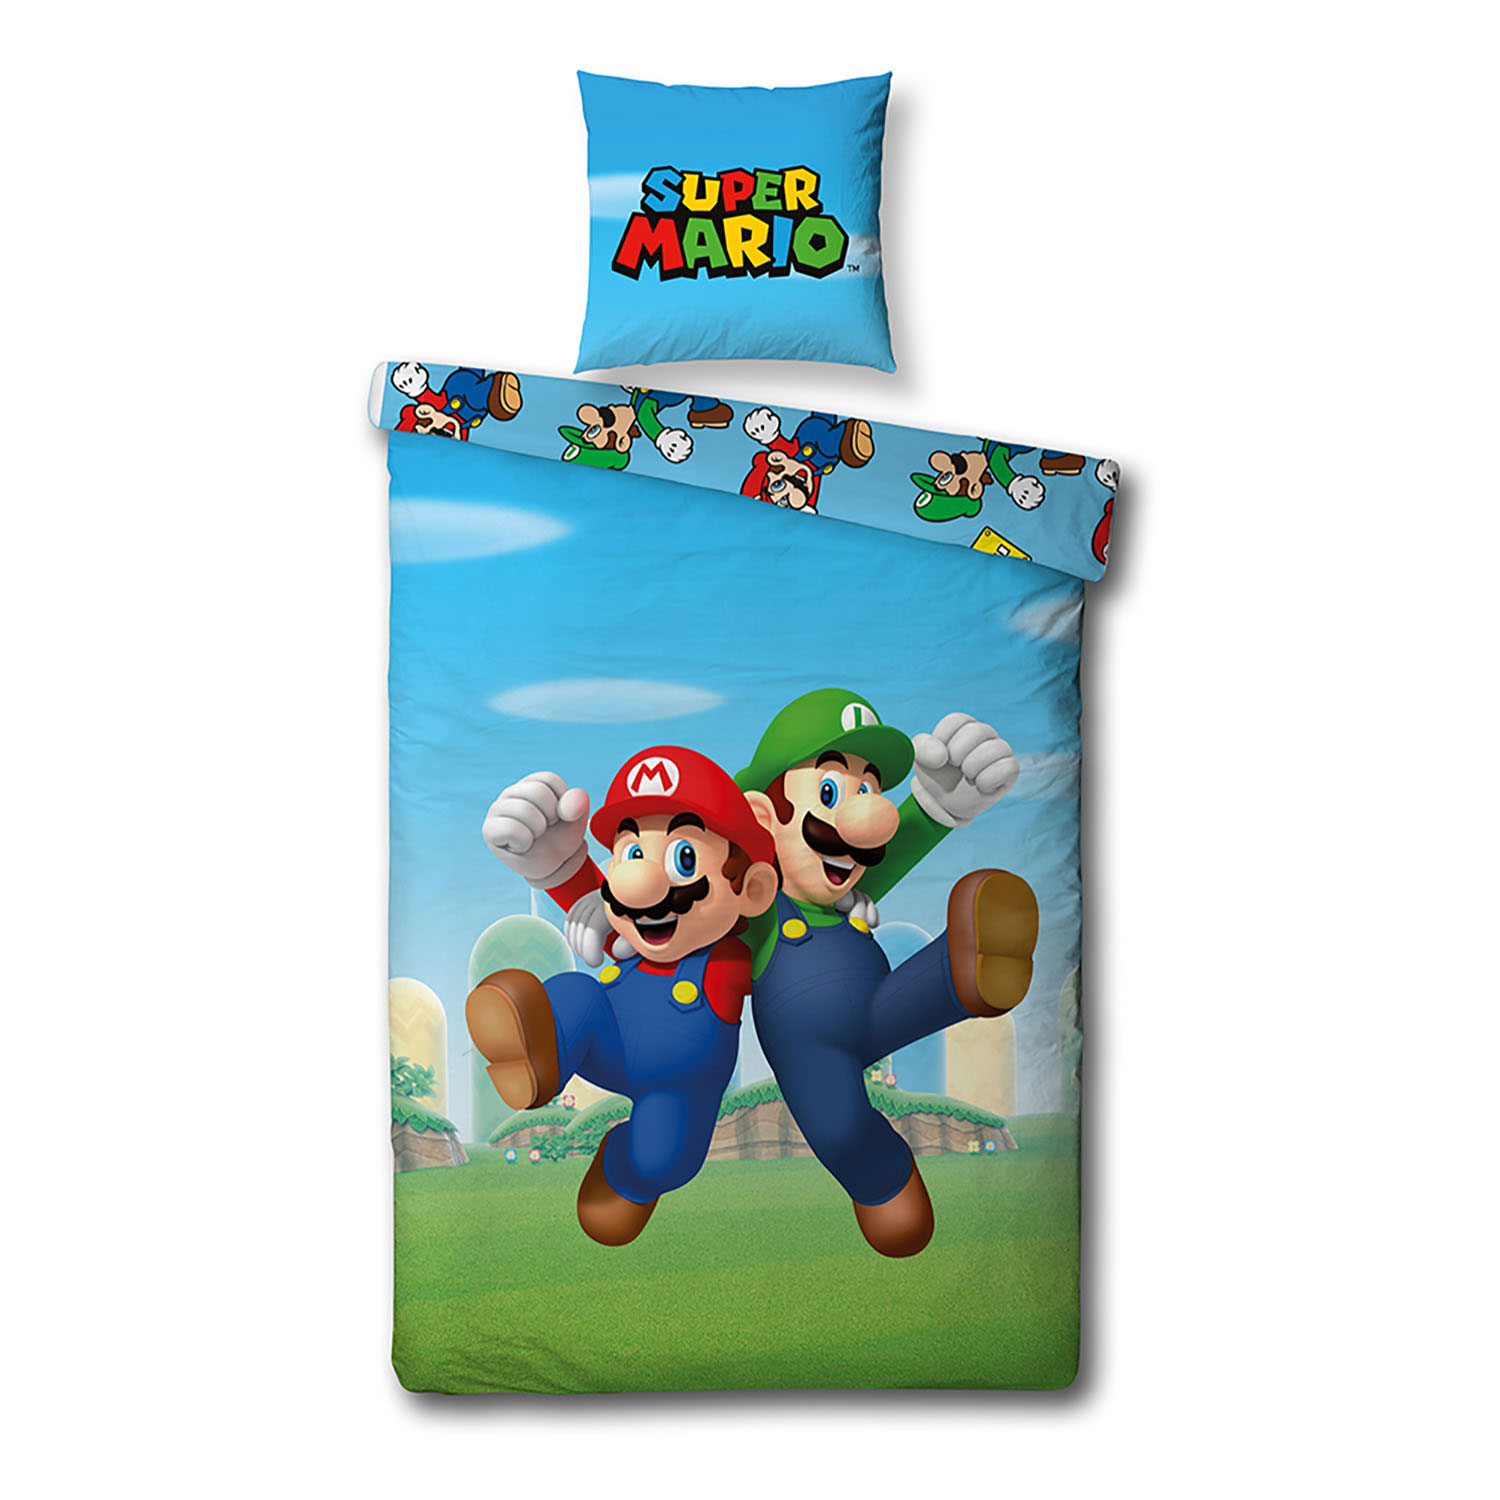 Worden straal Het is goedkoop Dekbedovertrek Super Mario Bros | Thimble Toys